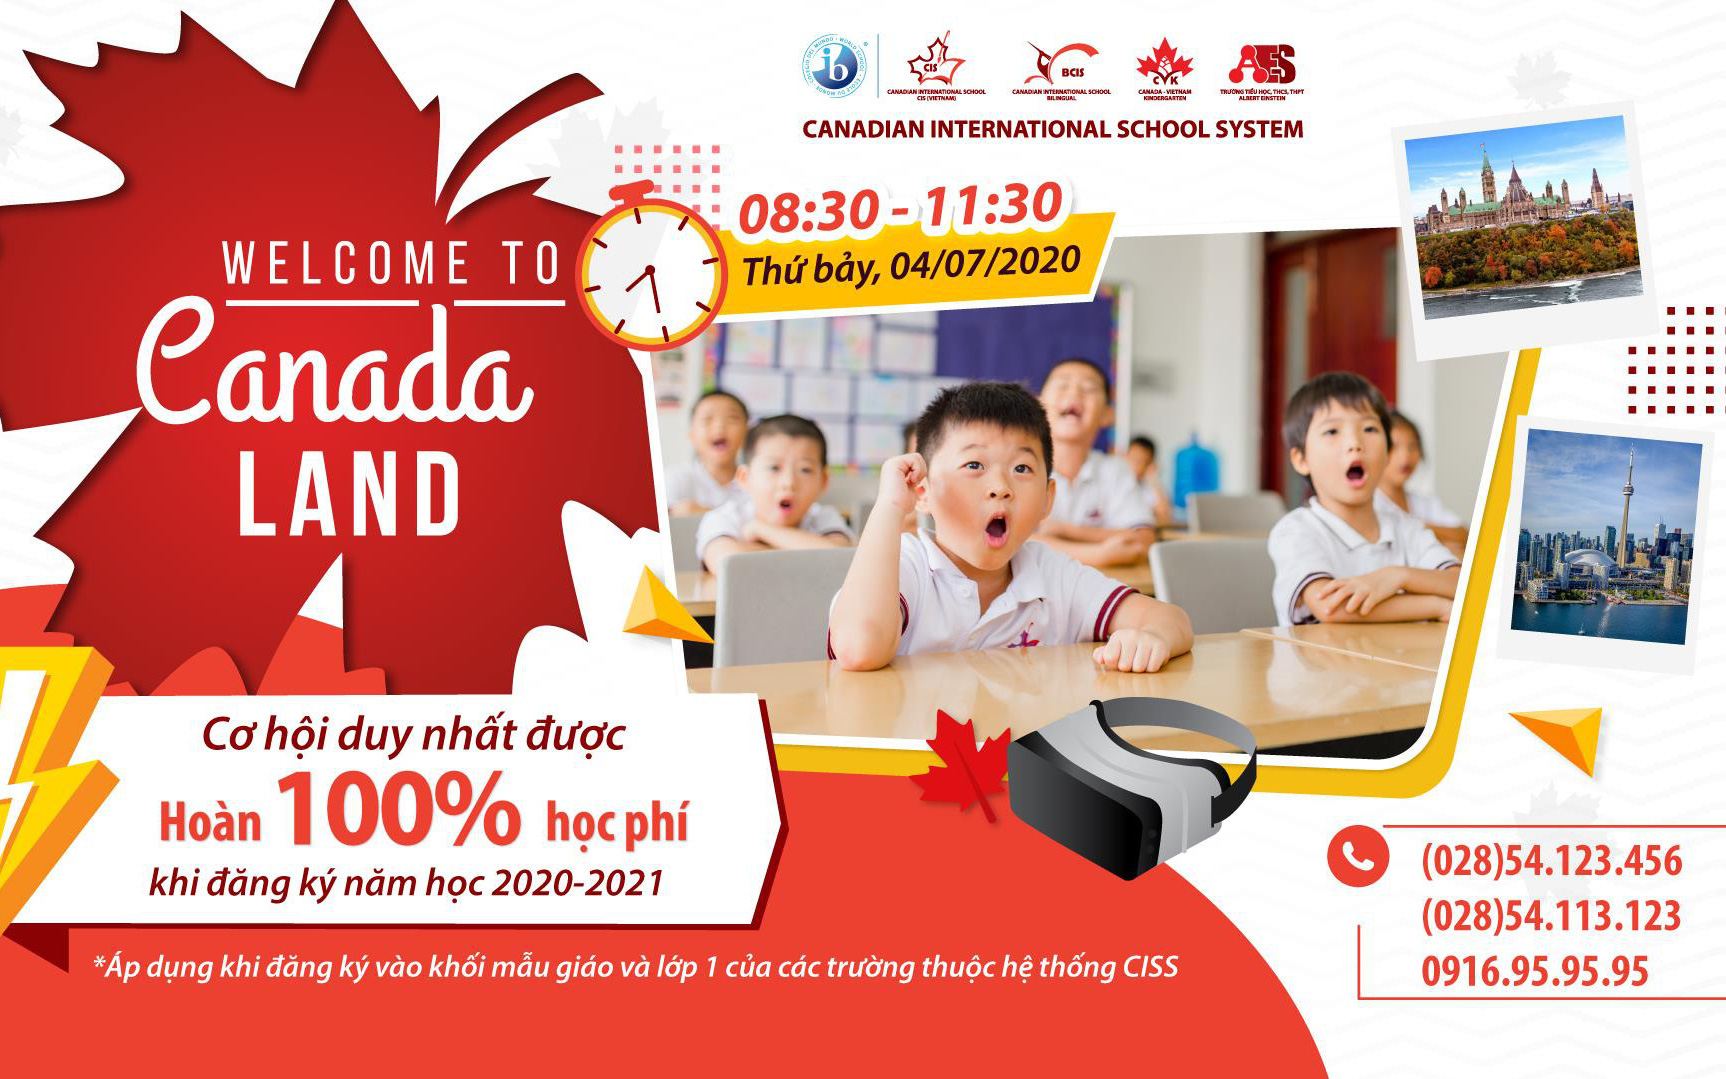 Hệ thống Trường quốc tế Canada (CISS) công bố chương trình “Hoàn 100% học phí khi đăng ký nhập học lớp 1 và khối mầm non”